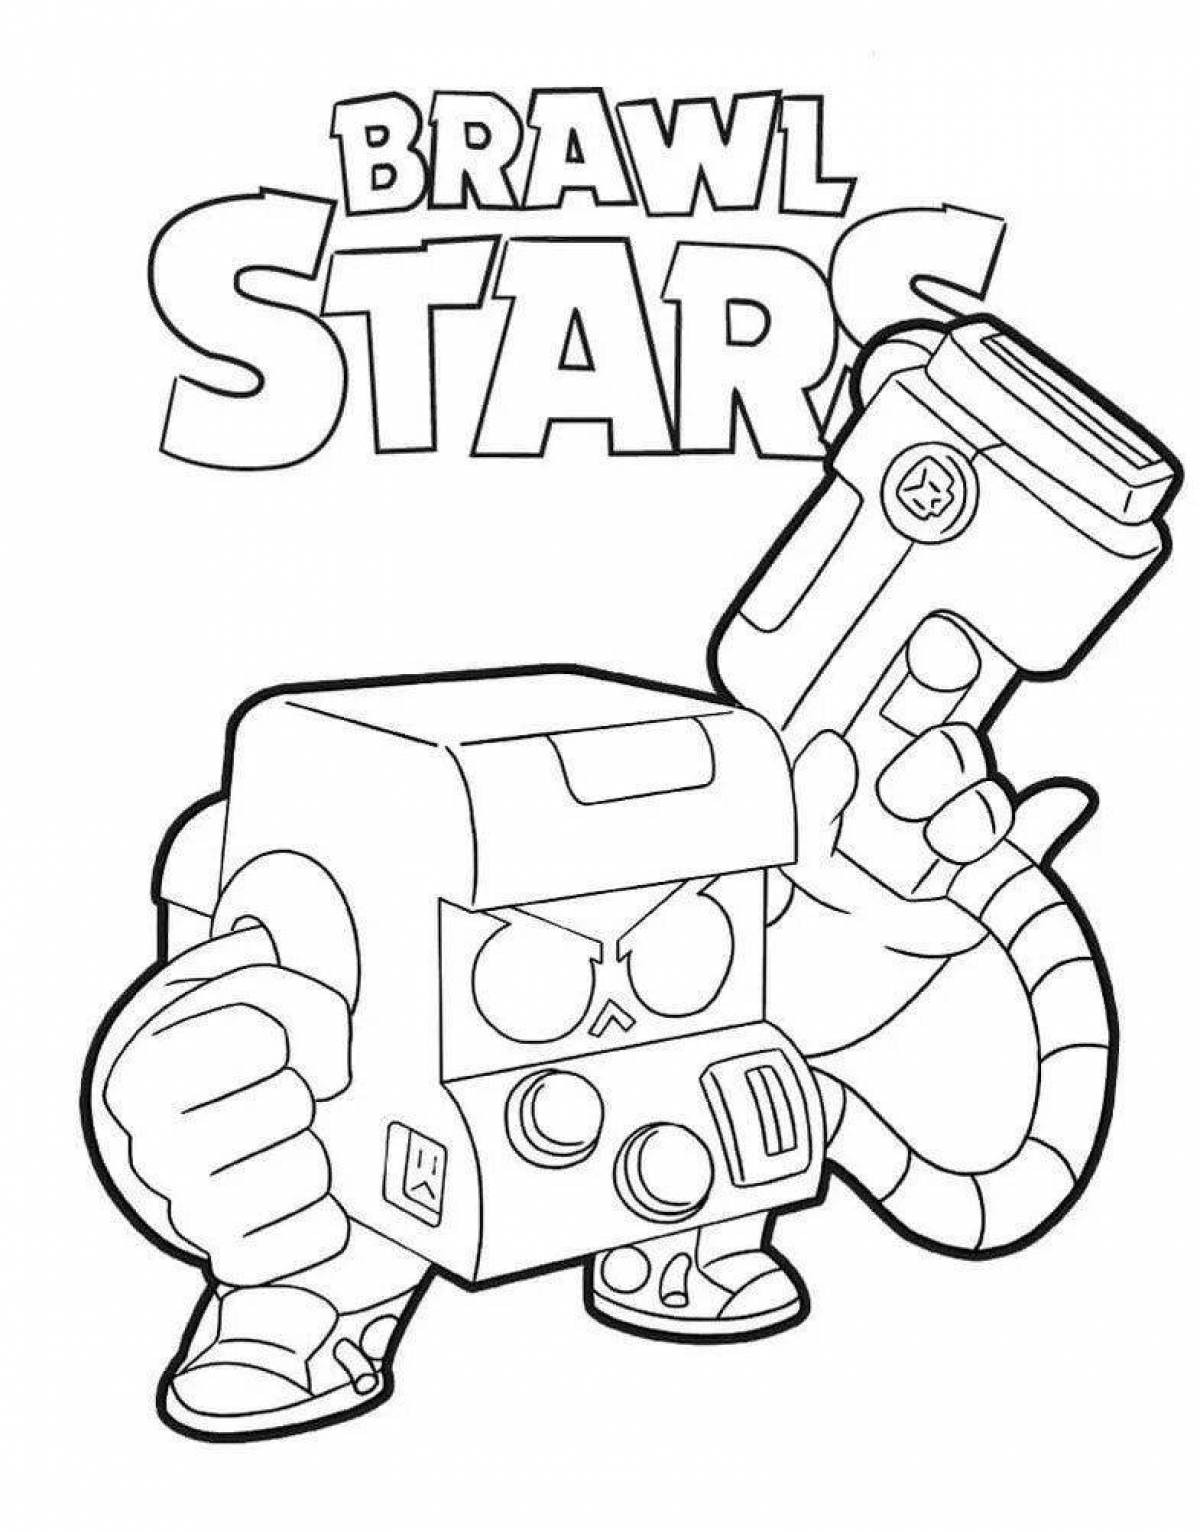 Vivacious bravo stars box coloring page